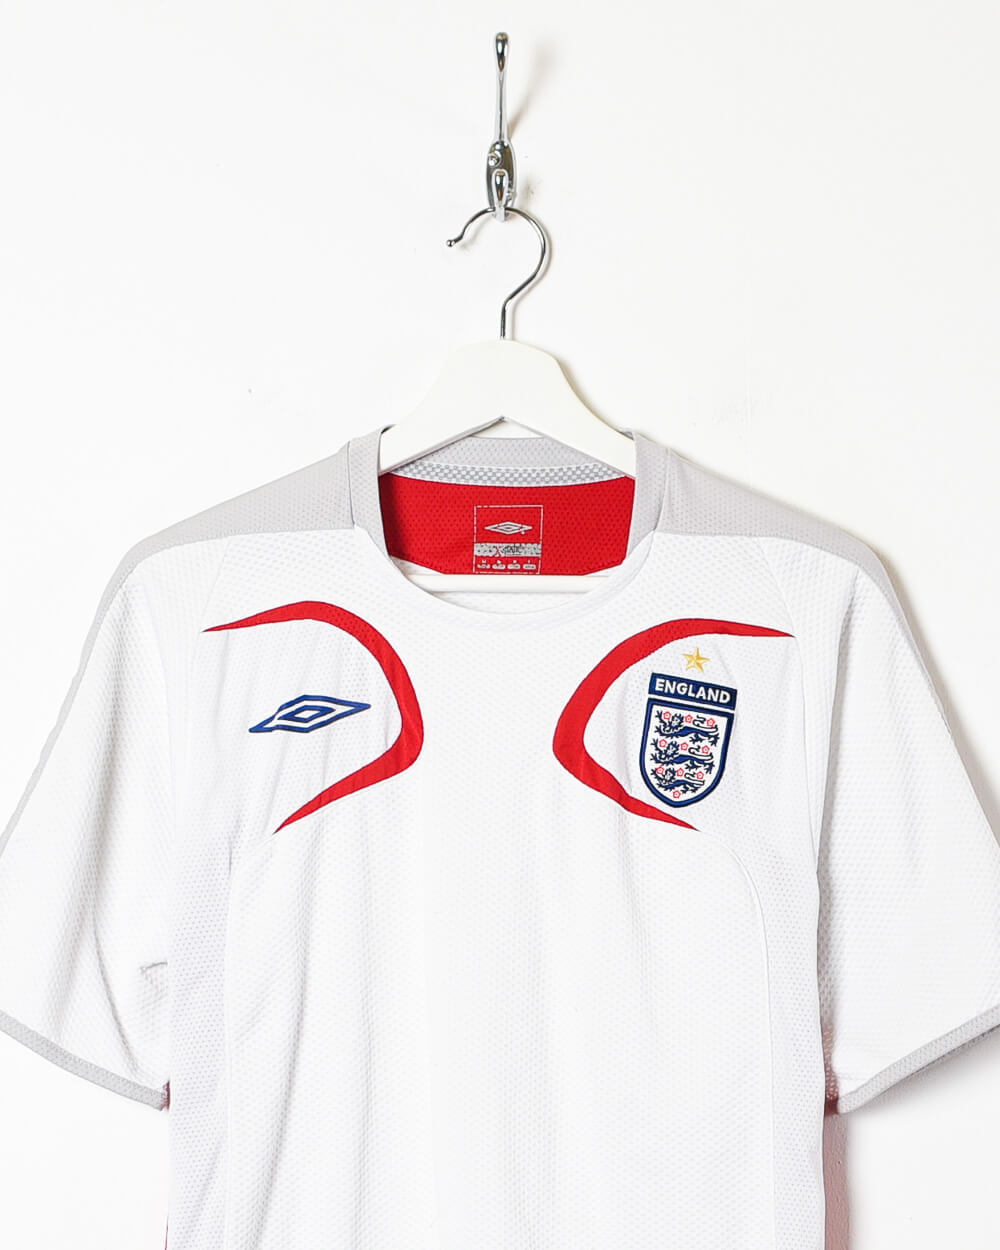 White Umbro 2005/07 England Training Shirt - Medium